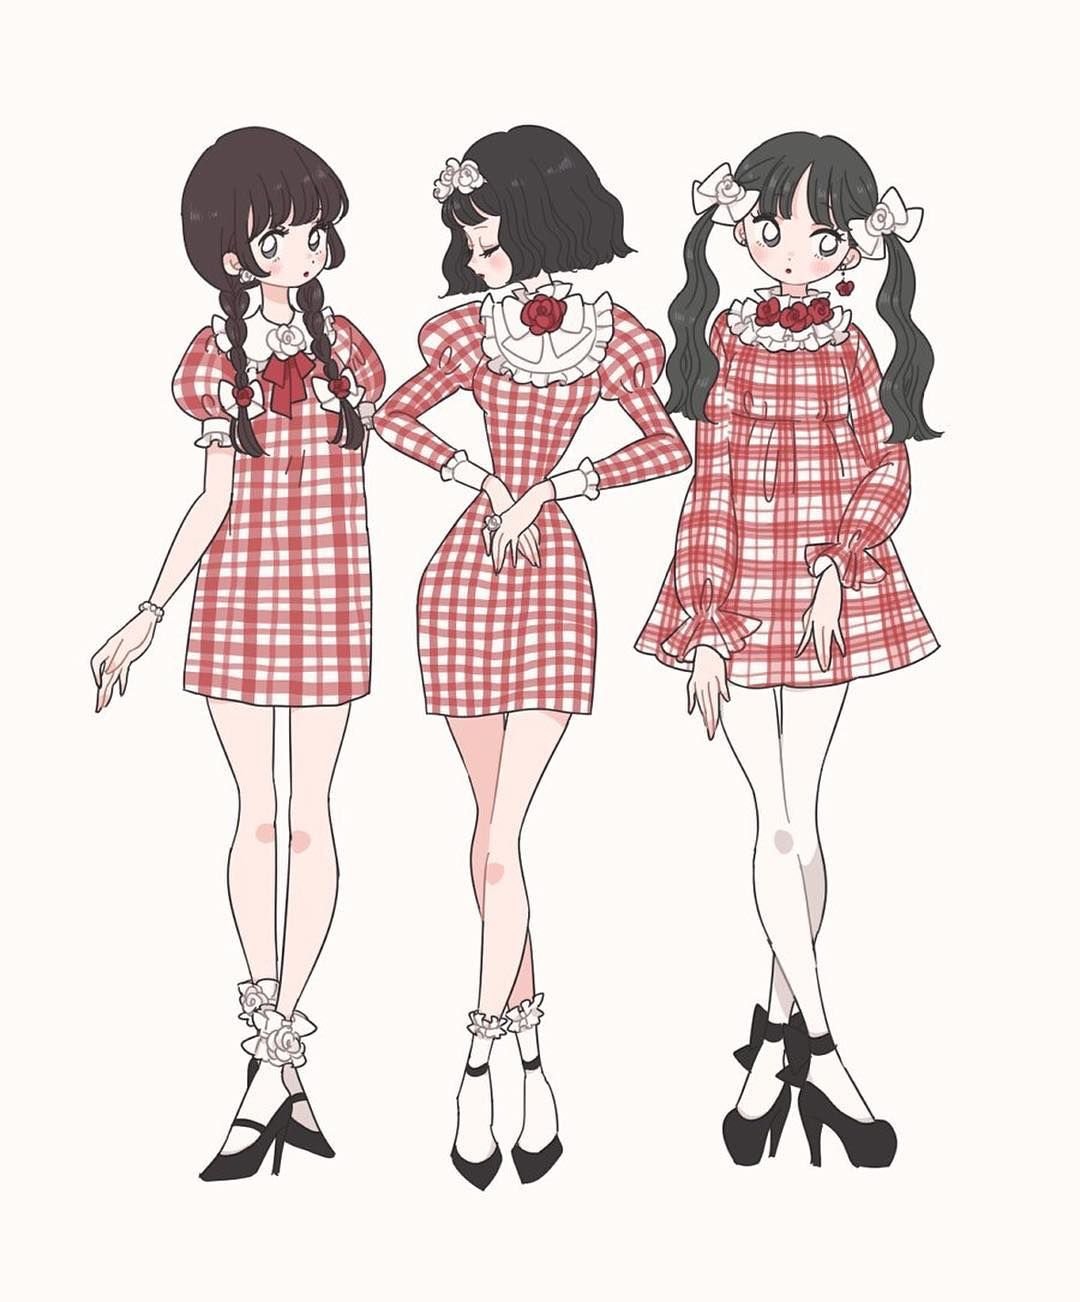 Аниме стиль одежды для девушек